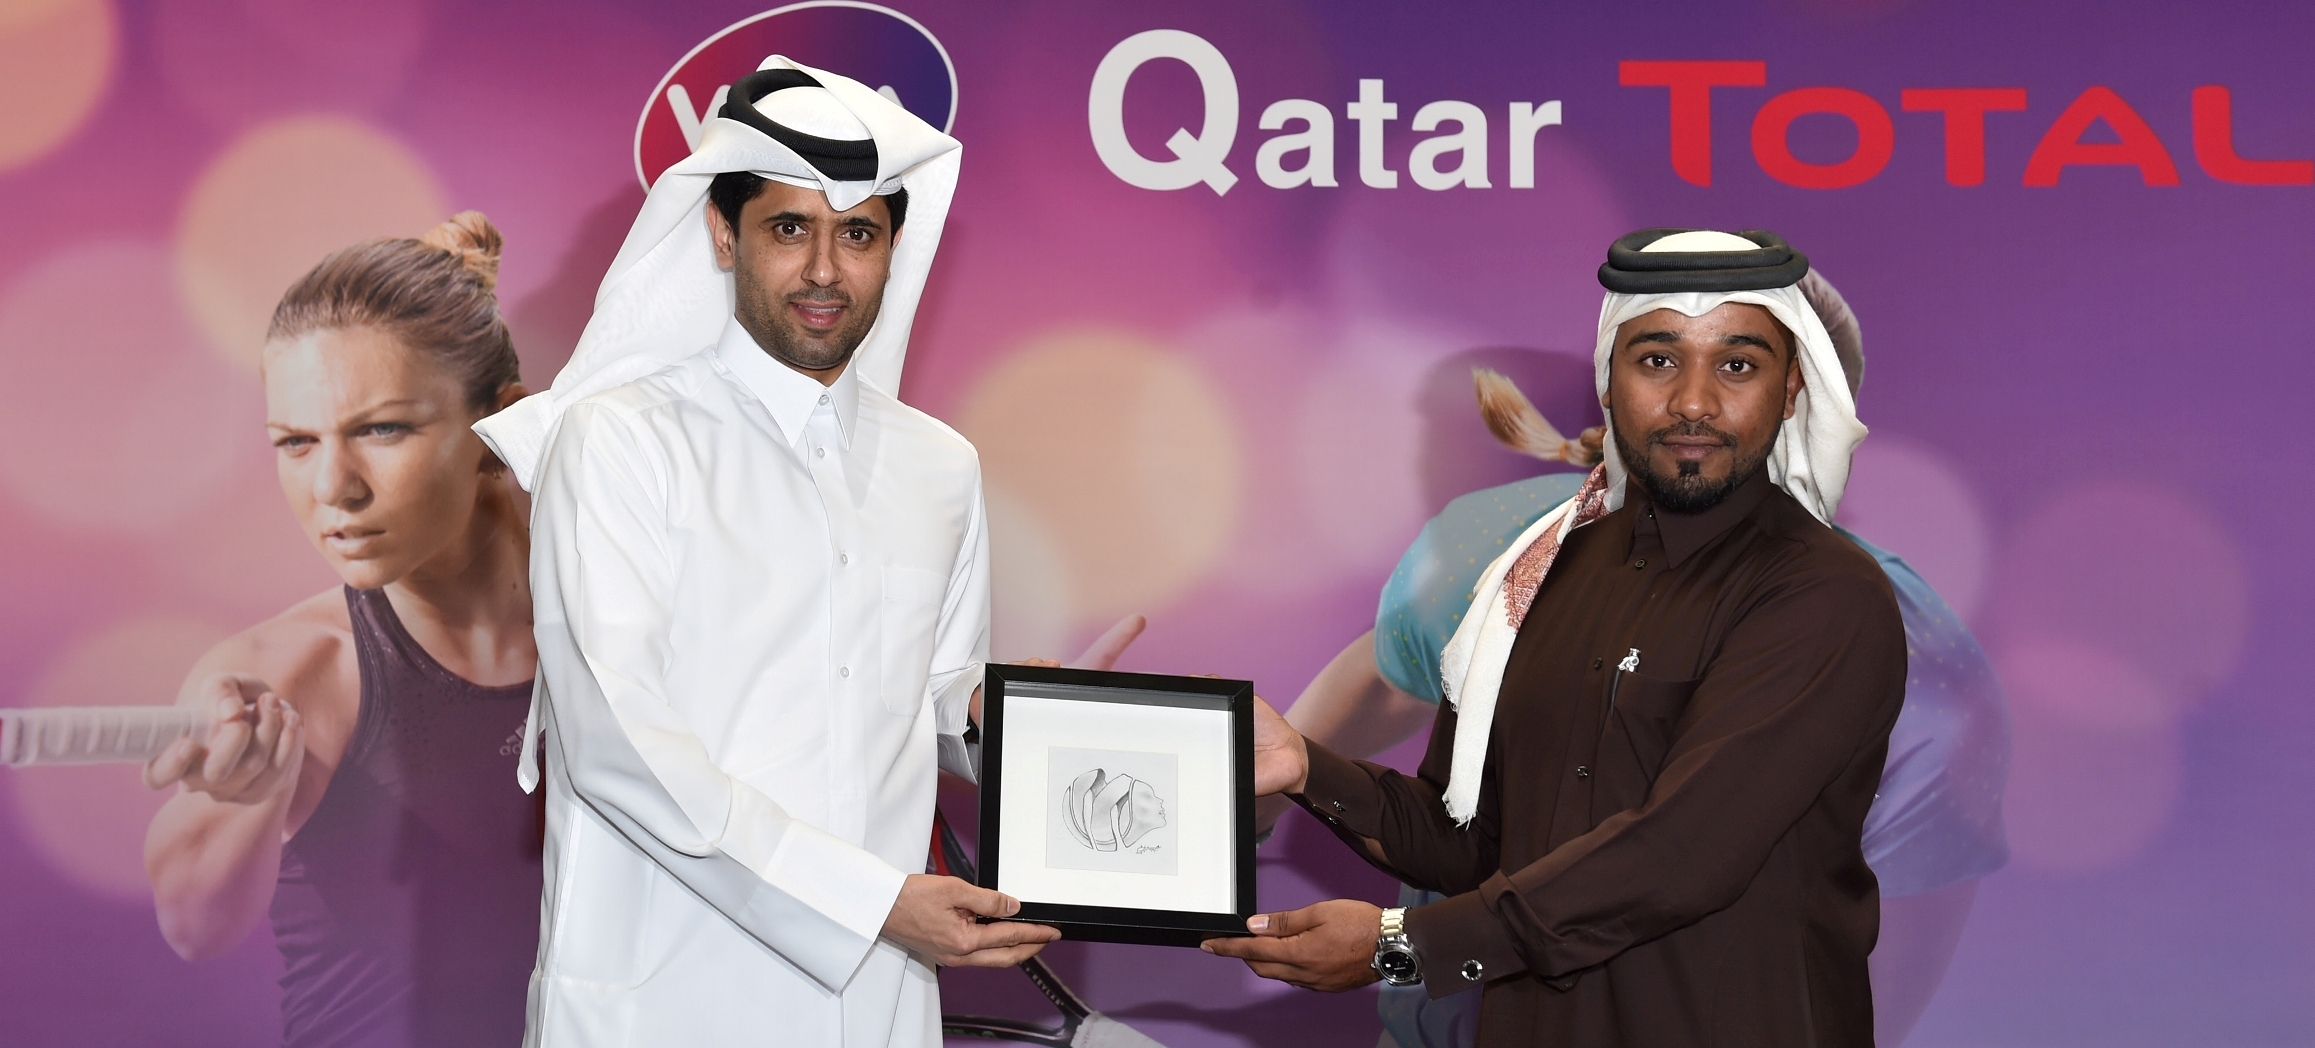 Qatar
news
total_commemorates_qtf
1
AR